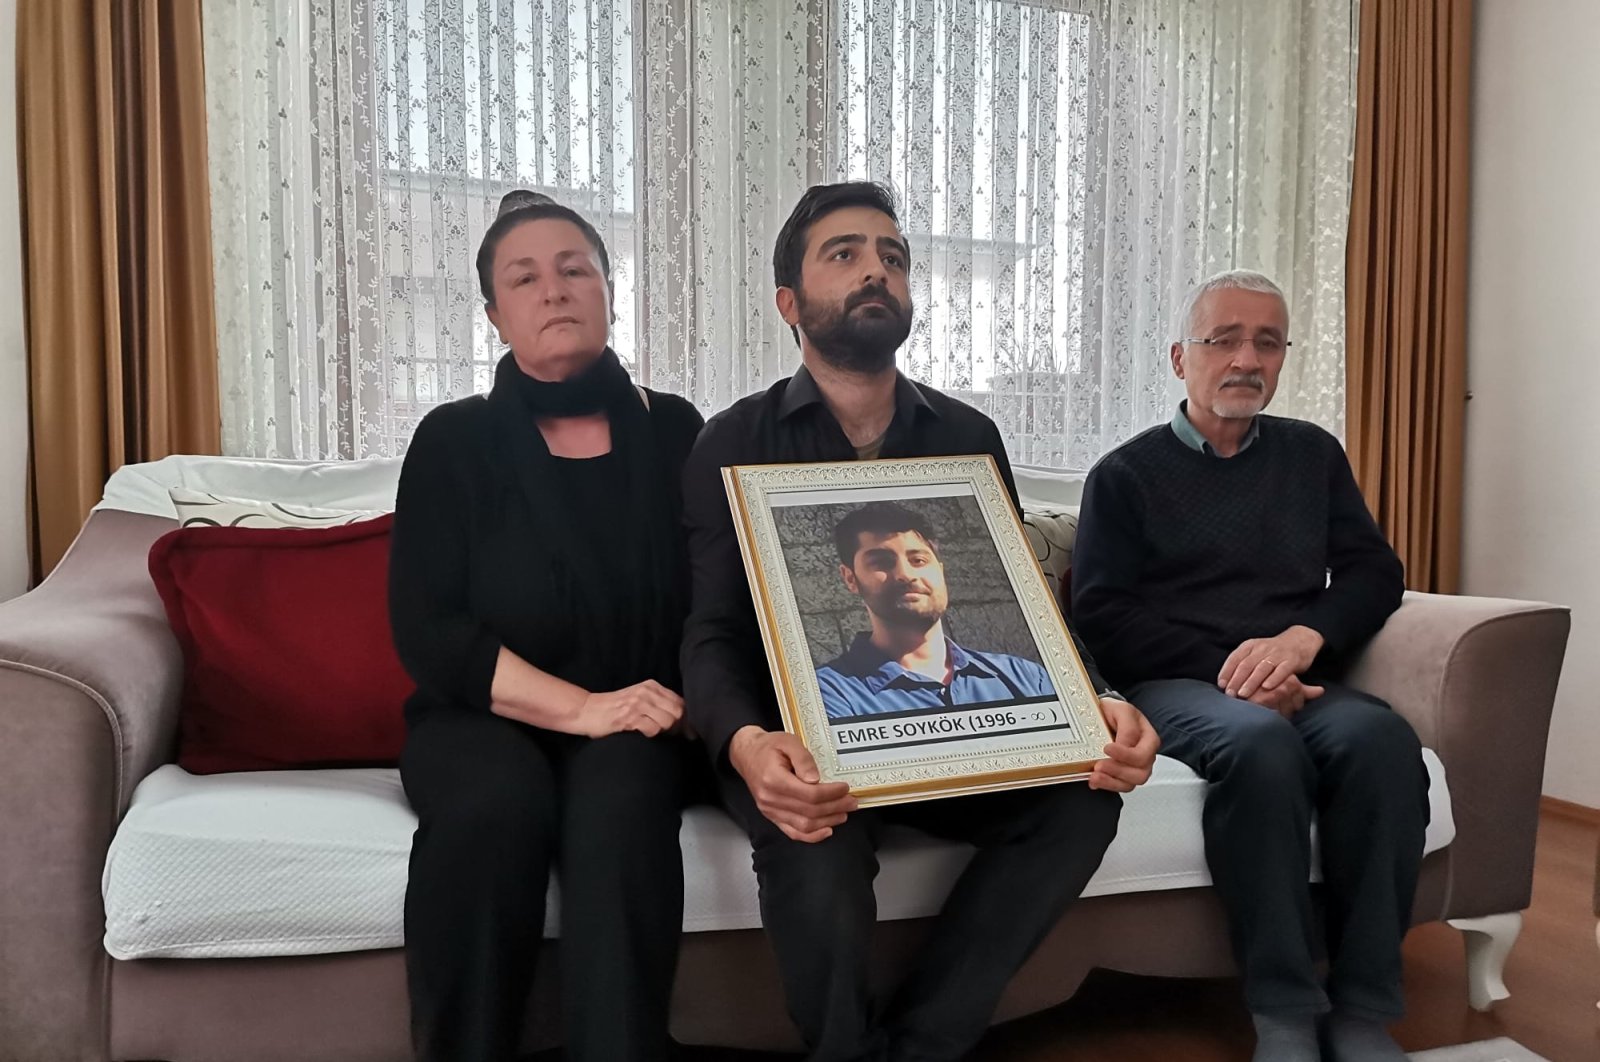 Keluarga membantah klaim bunuh diri dalam kematian akademisi Turki di AS